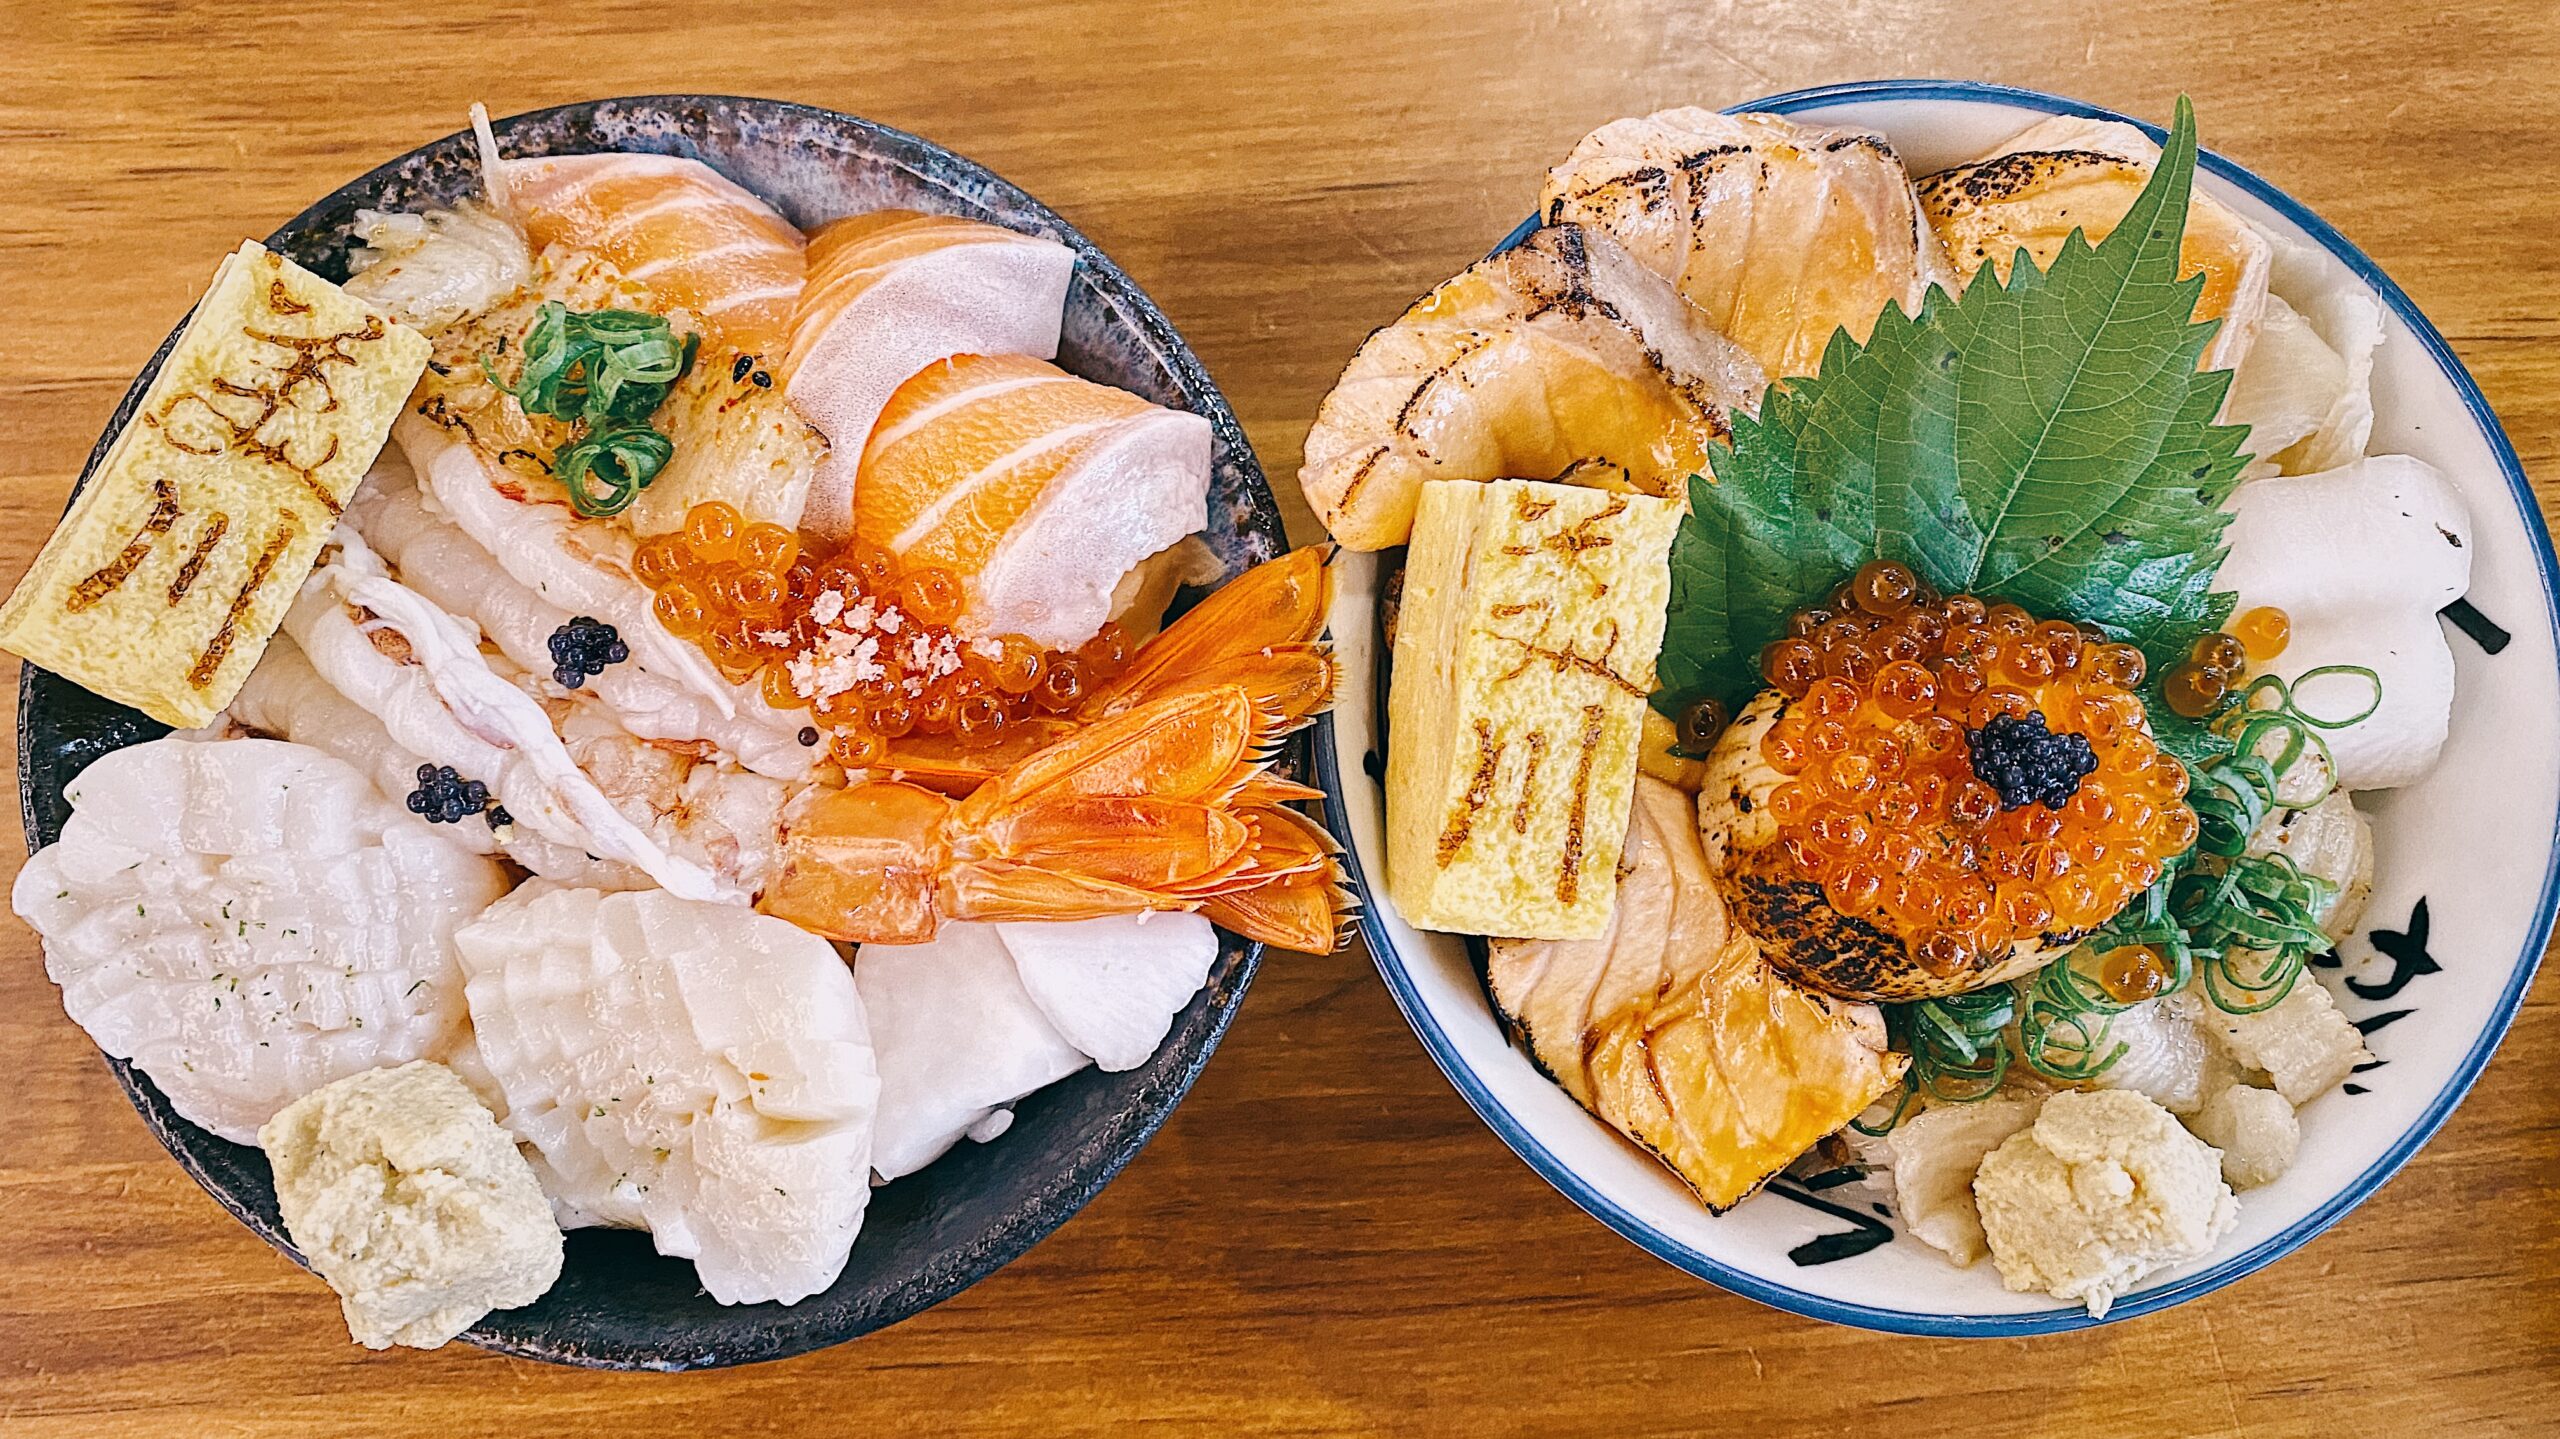 【內湖美食】美川壽司mikawa 新鮮食材 一次上癮令人驚豔的海鮮丼飯 (菜單) @阿朱的日常